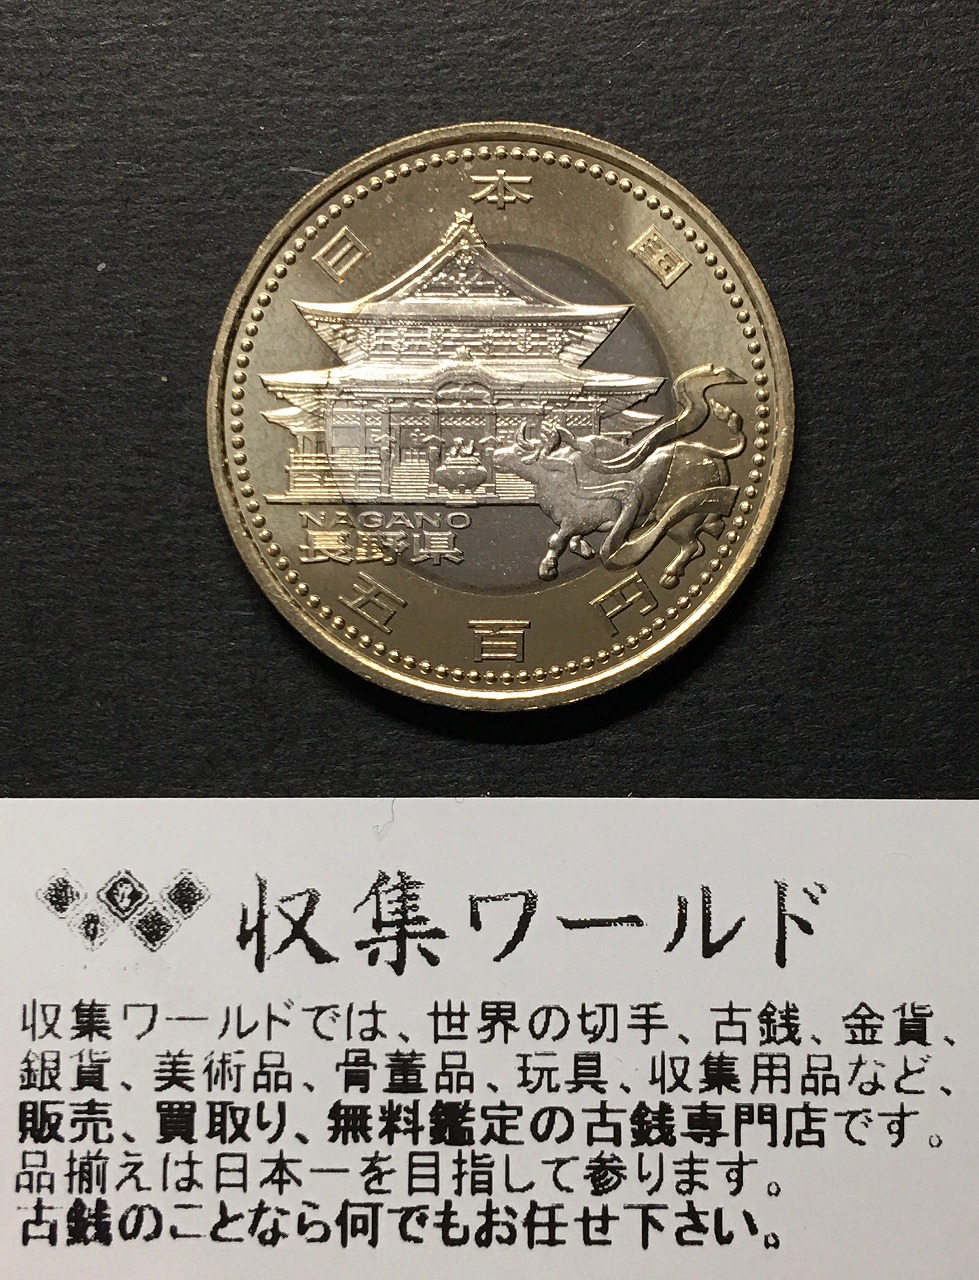 地方自治法施行六十周年記念硬貨 バイカラー・クラッド 500円プルーフ